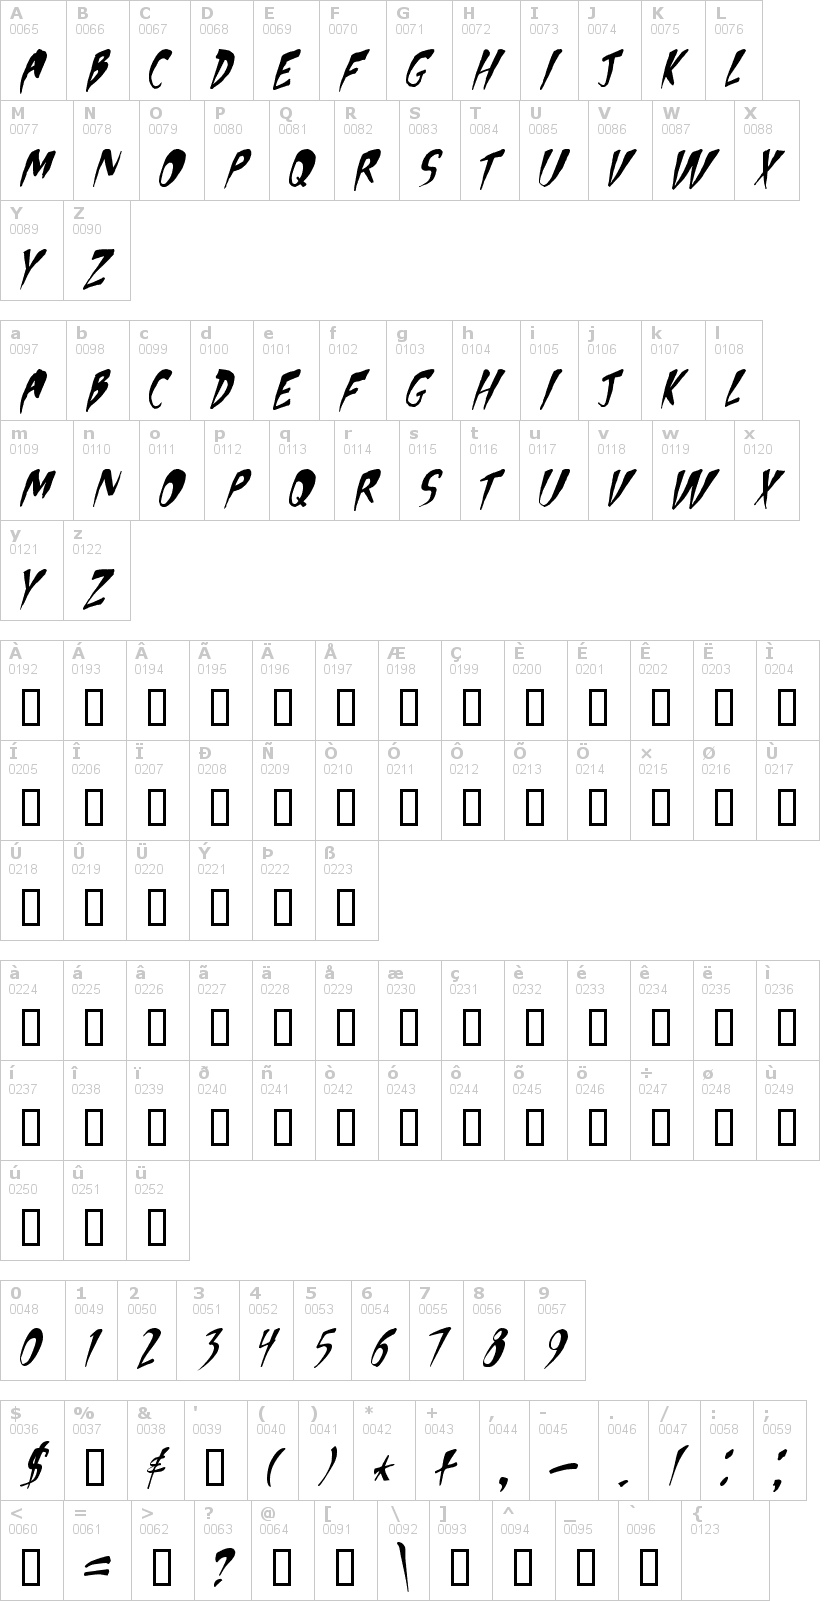 Lettere dell'alfabeto del font apocalypse con le quali è possibile realizzare adesivi prespaziati